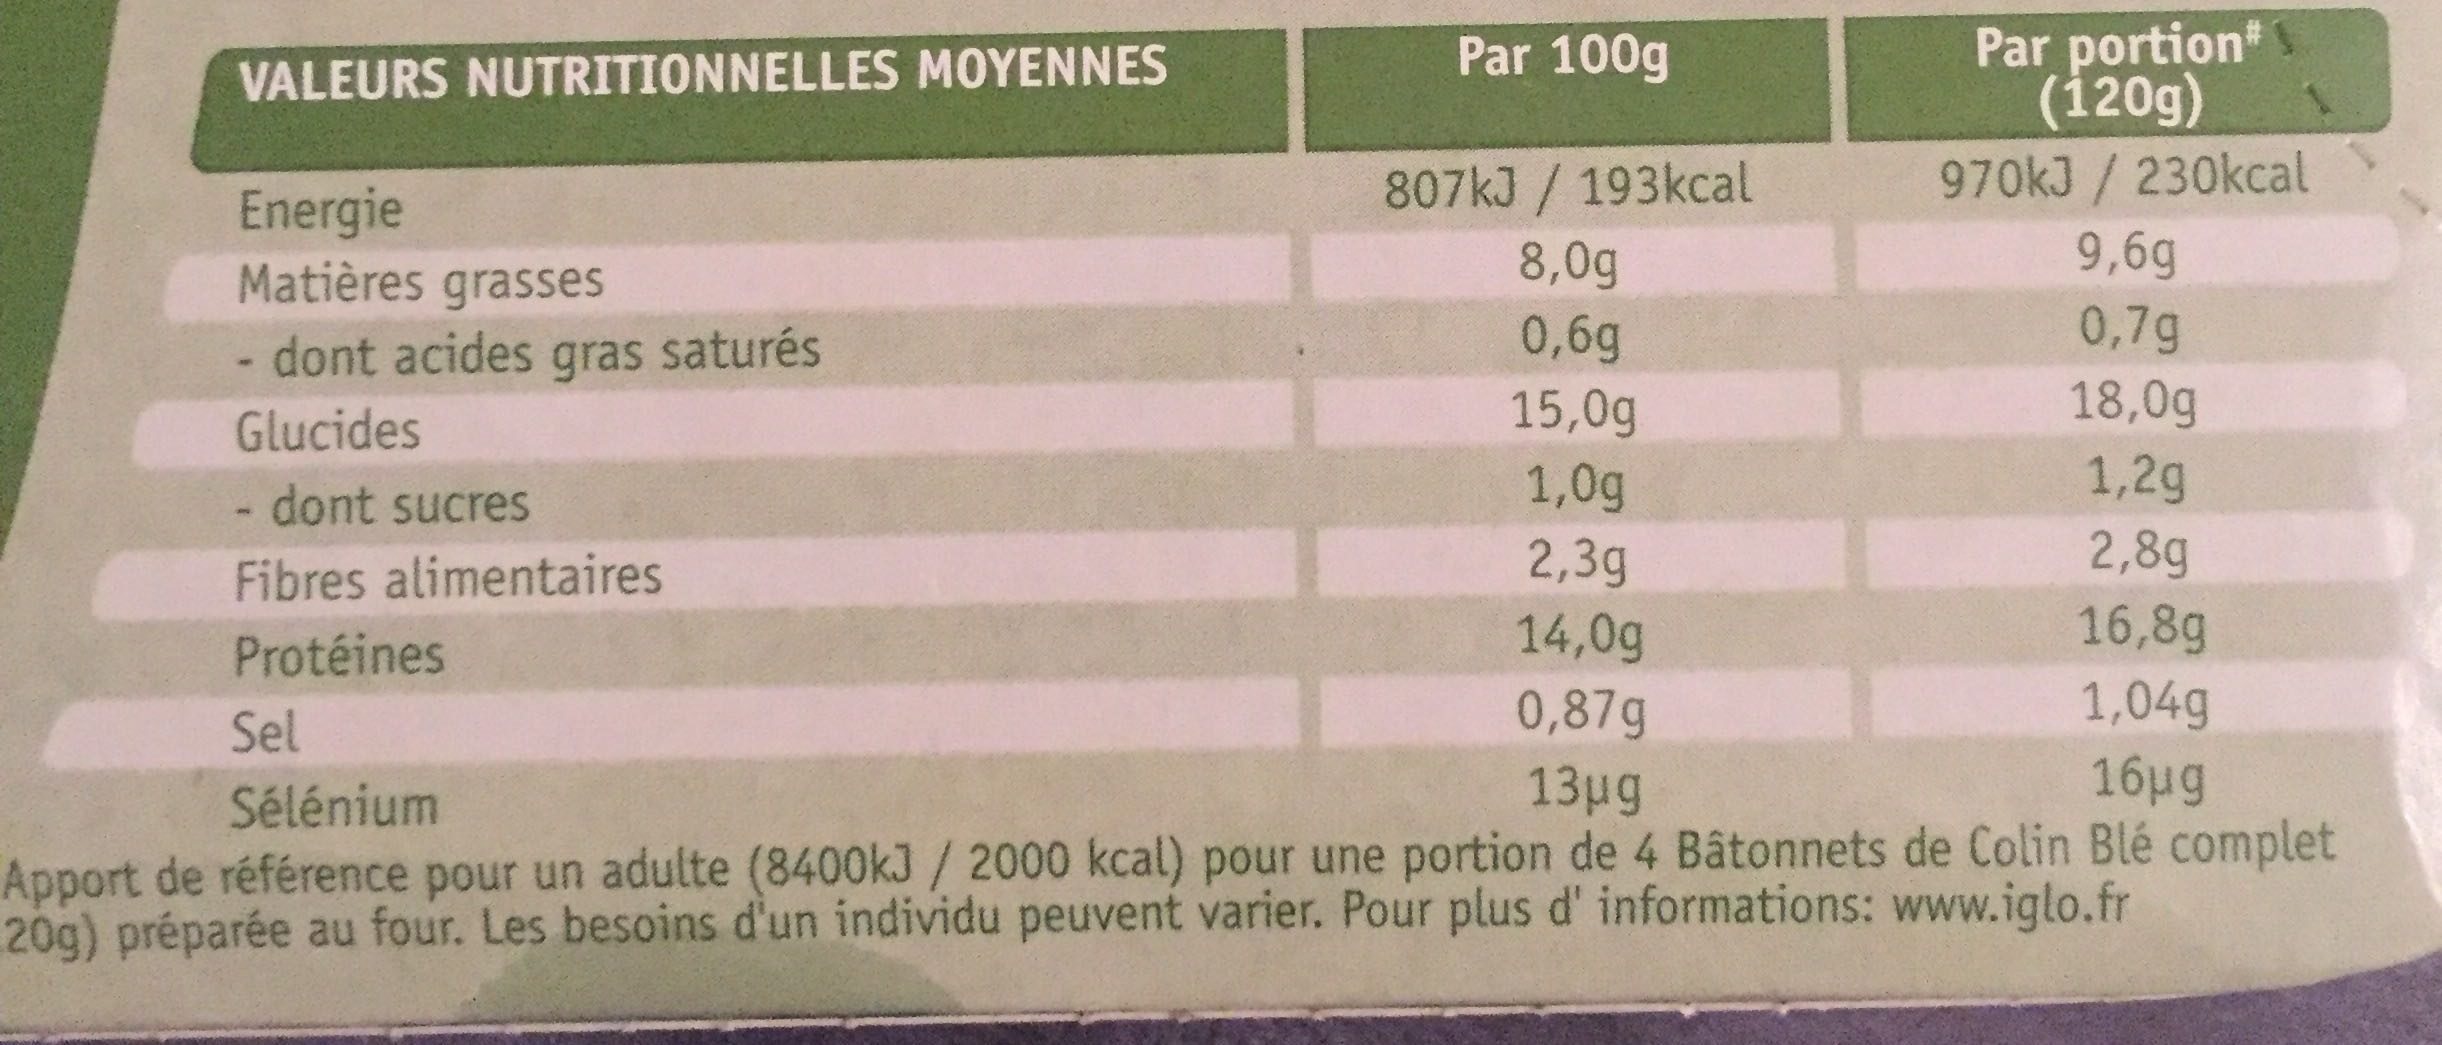 Bâtonnets de Colin - blé complet - Nutrition facts - fr